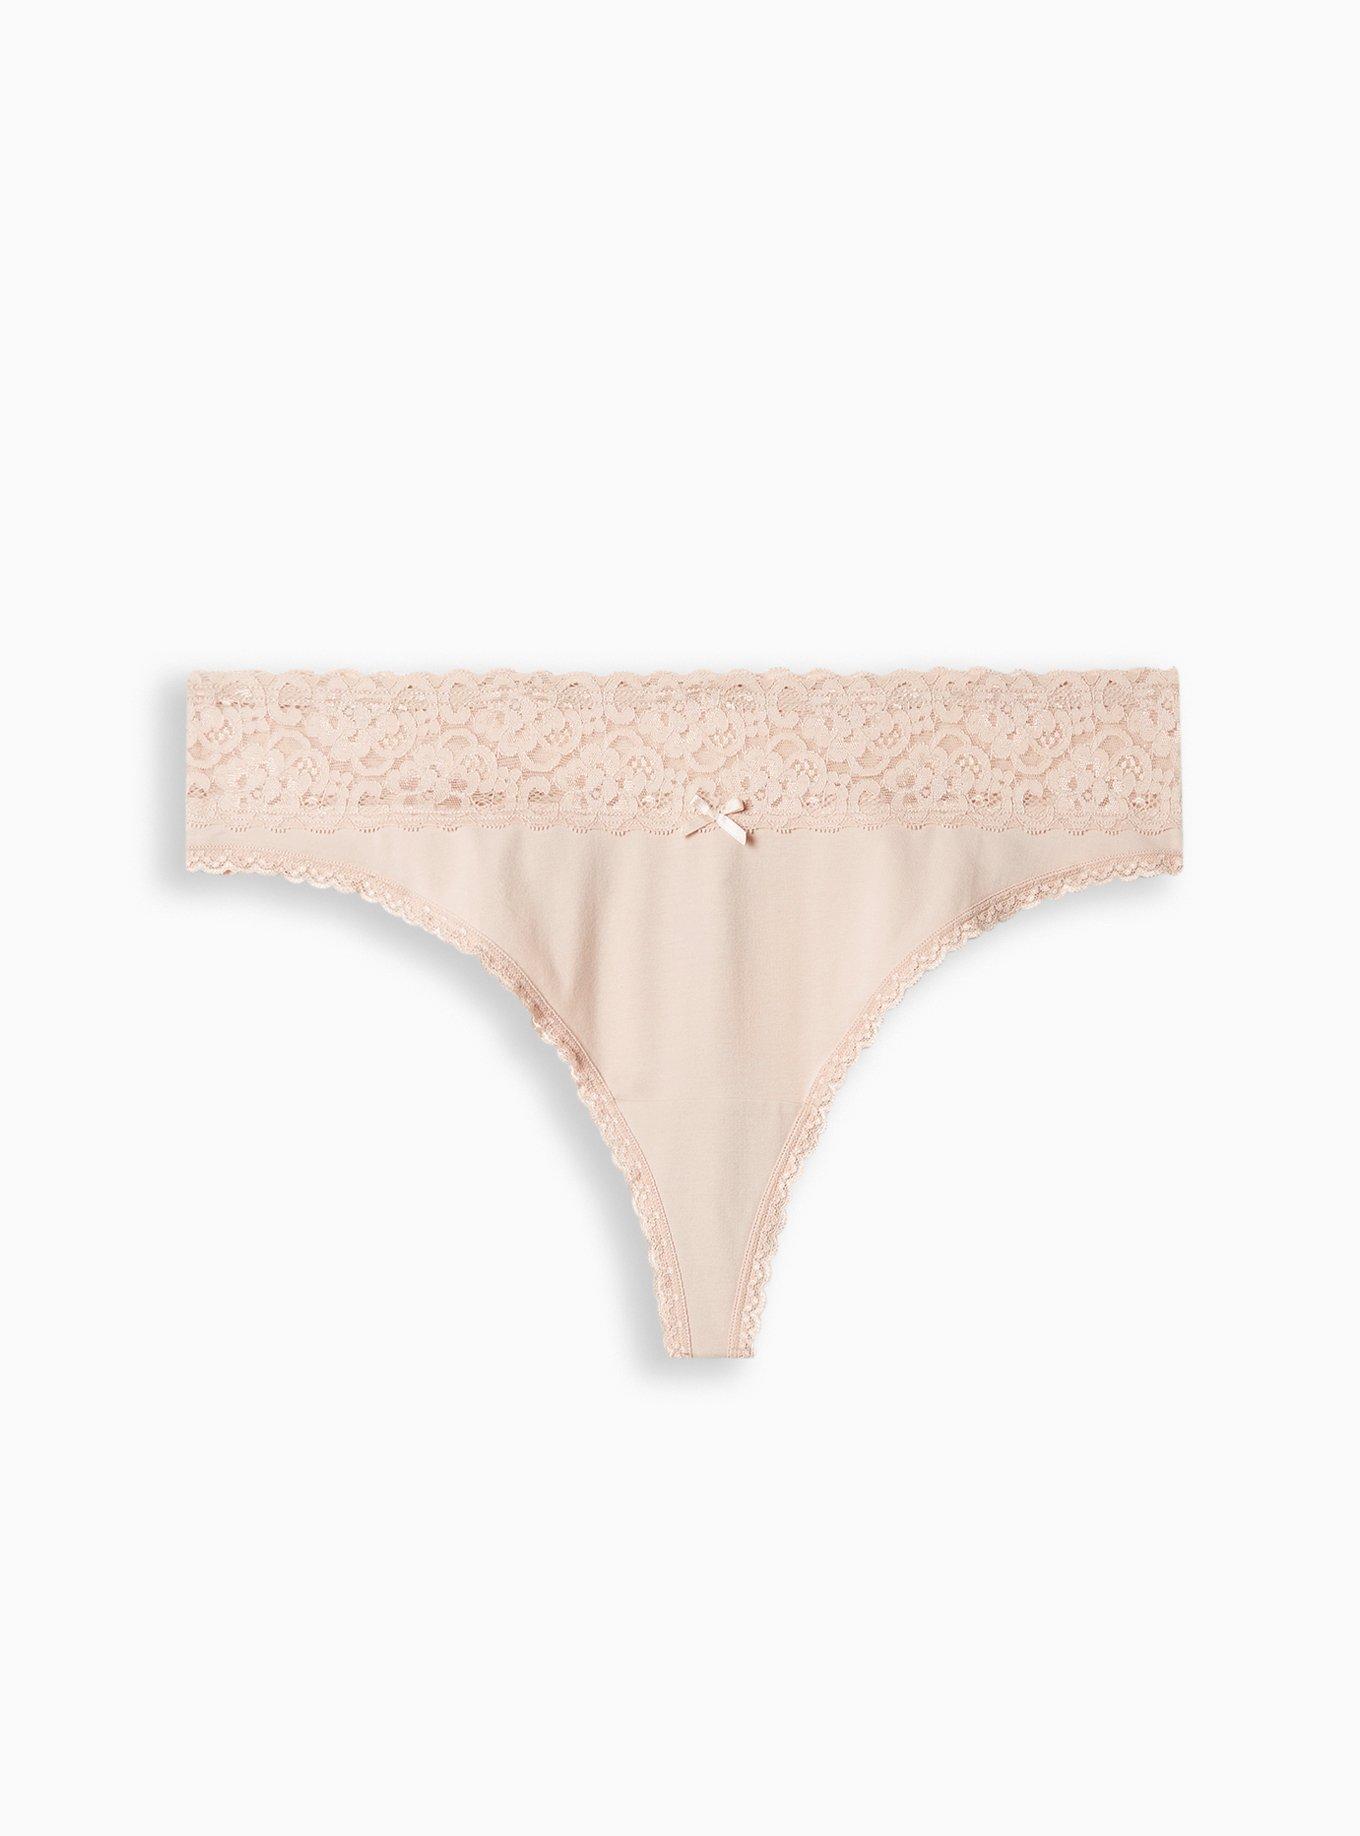 Plus Size - Cotton Mid-Rise Thong Lace Trim Panty - Torrid